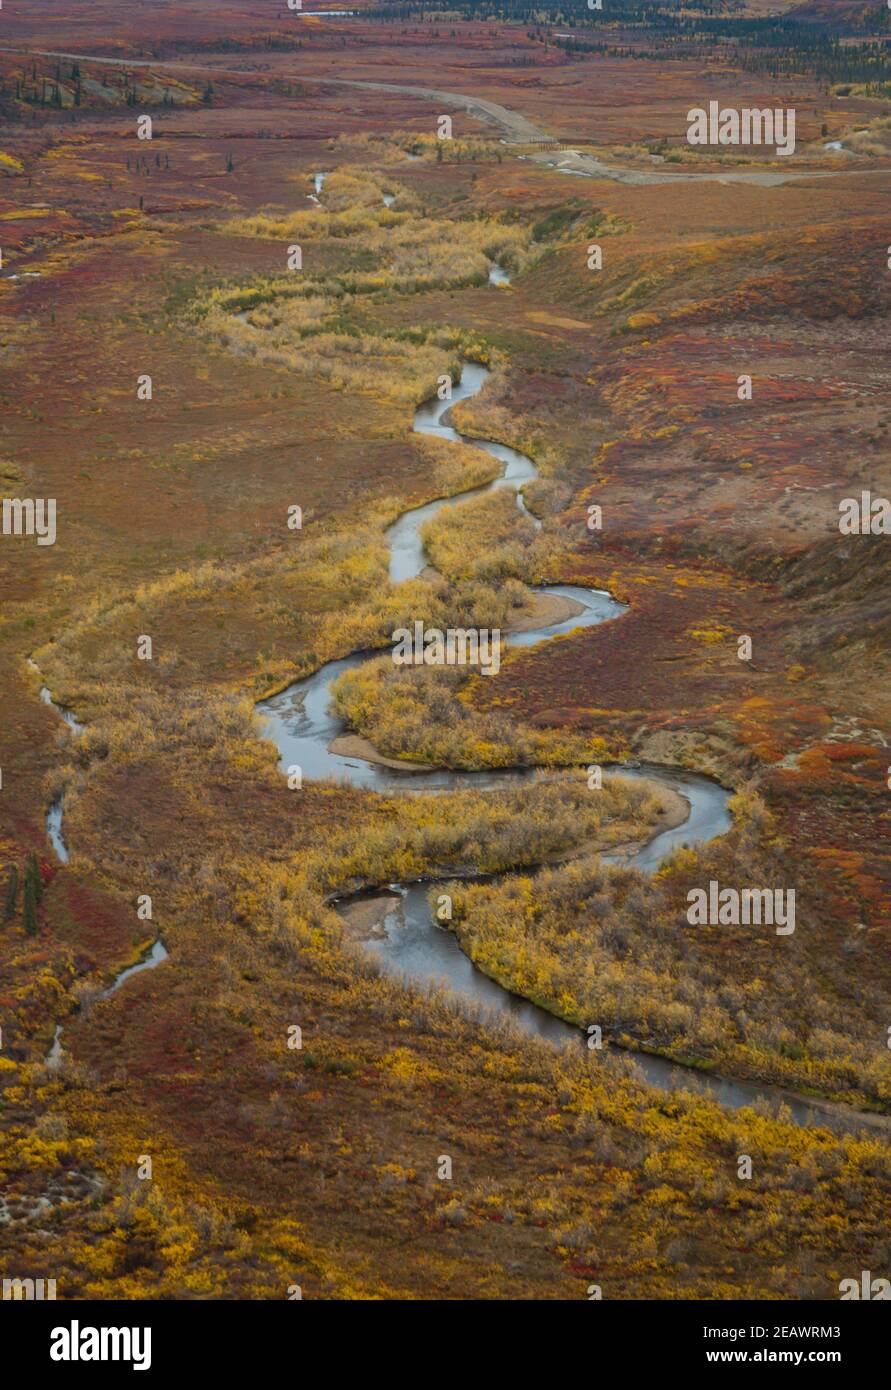 Vue aérienne d'un cours d'eau le long de la route Inuvik-Tuktoyaktuk à l'automne, dans les Territoires du Nord-Ouest, dans l'ouest de l'arctique canadien. Banque D'Images